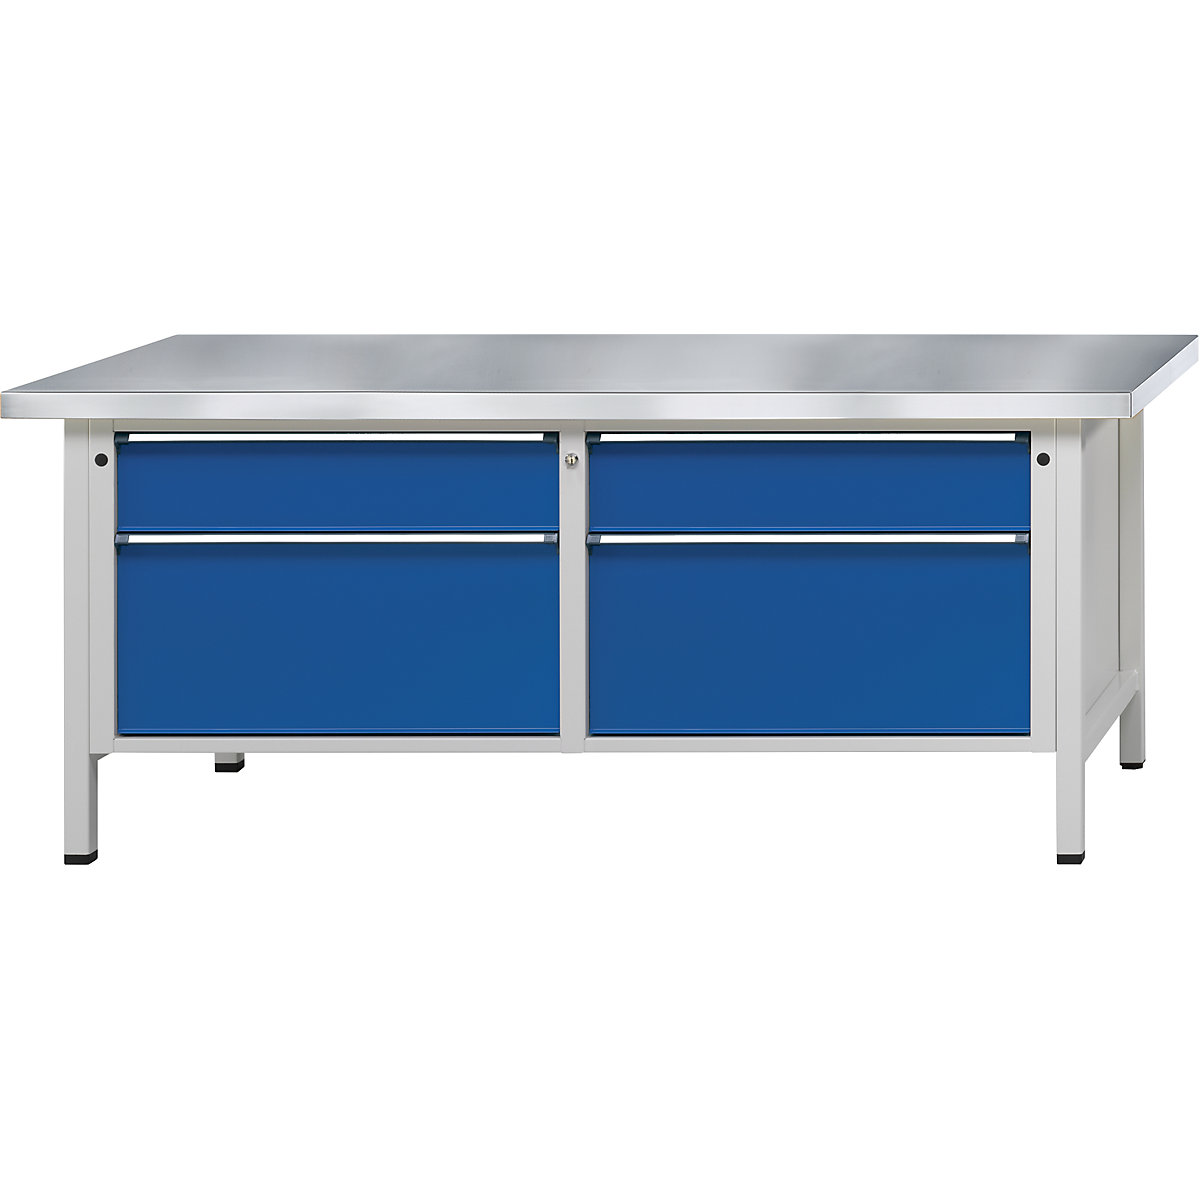 Dílenské stoly s šířkou 2000 mm, rámová konstrukce – ANKE, 4 zásuvky, deska s potahem z ocelového plechu, výška 840 mm